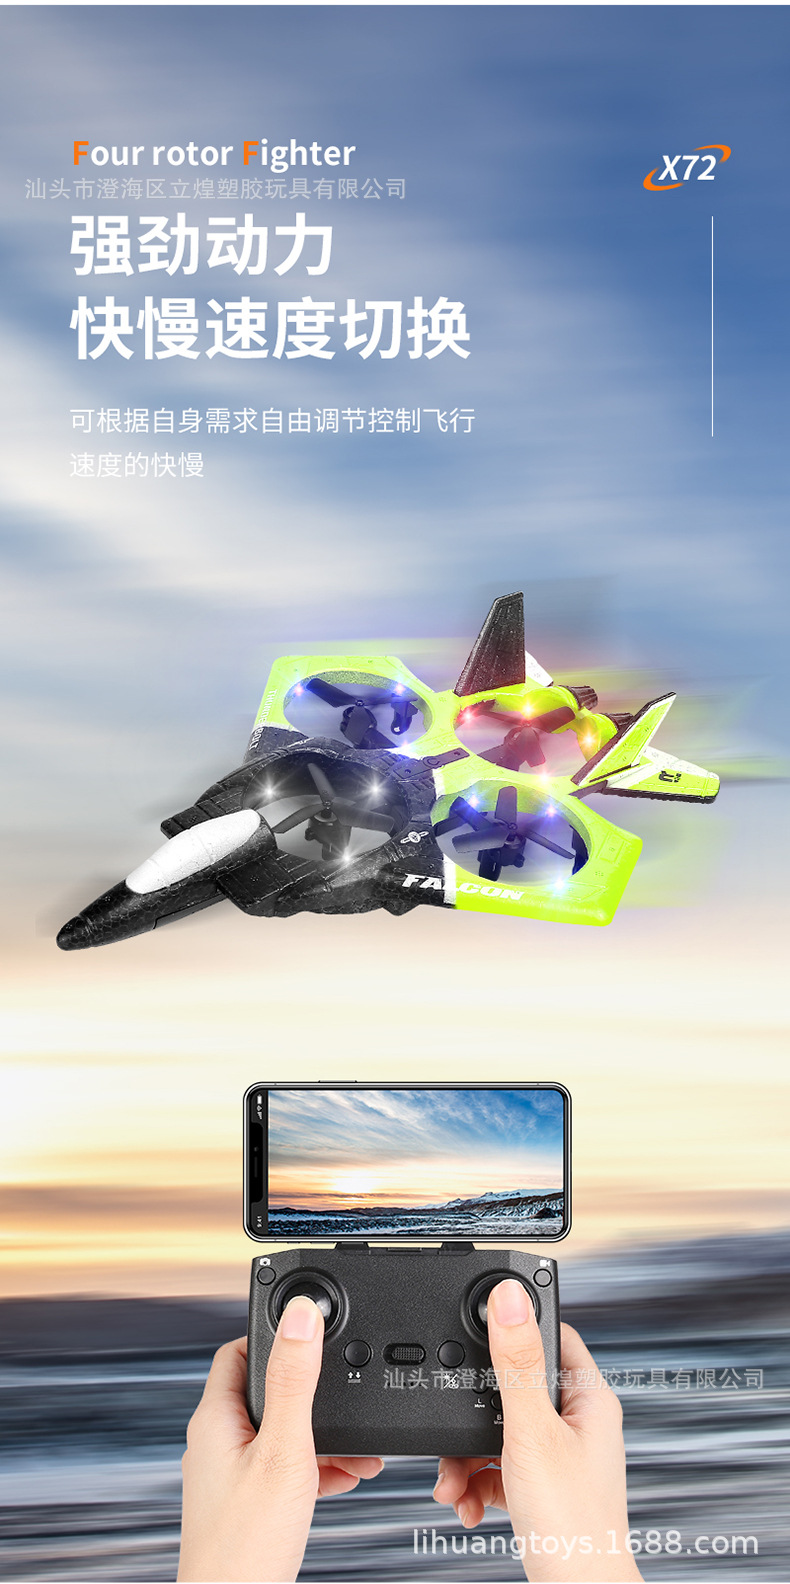 歼20遥控飞机 泡沫无人机航模滑翔机儿童固定翼战斗飞机玩具男孩详情9